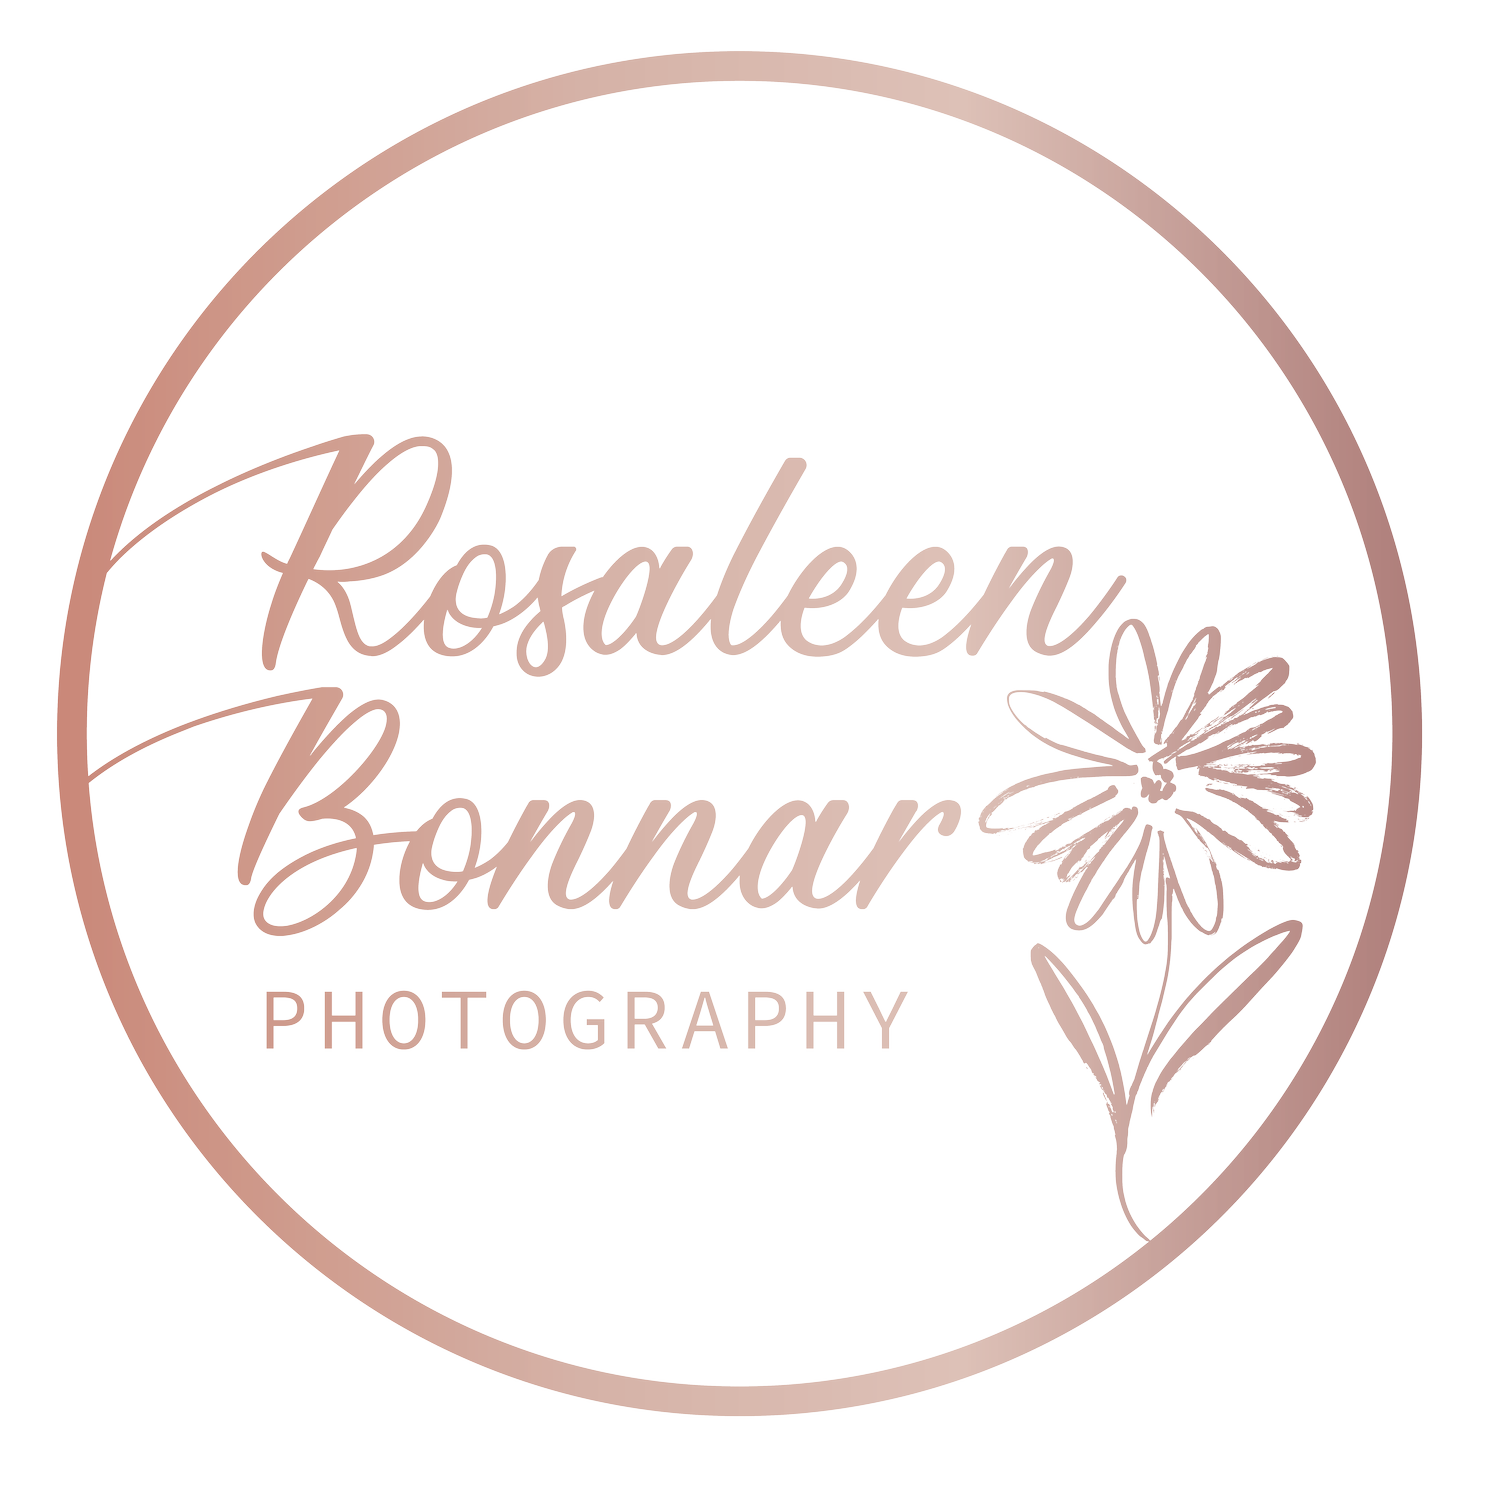 Rosaleen Bonnar